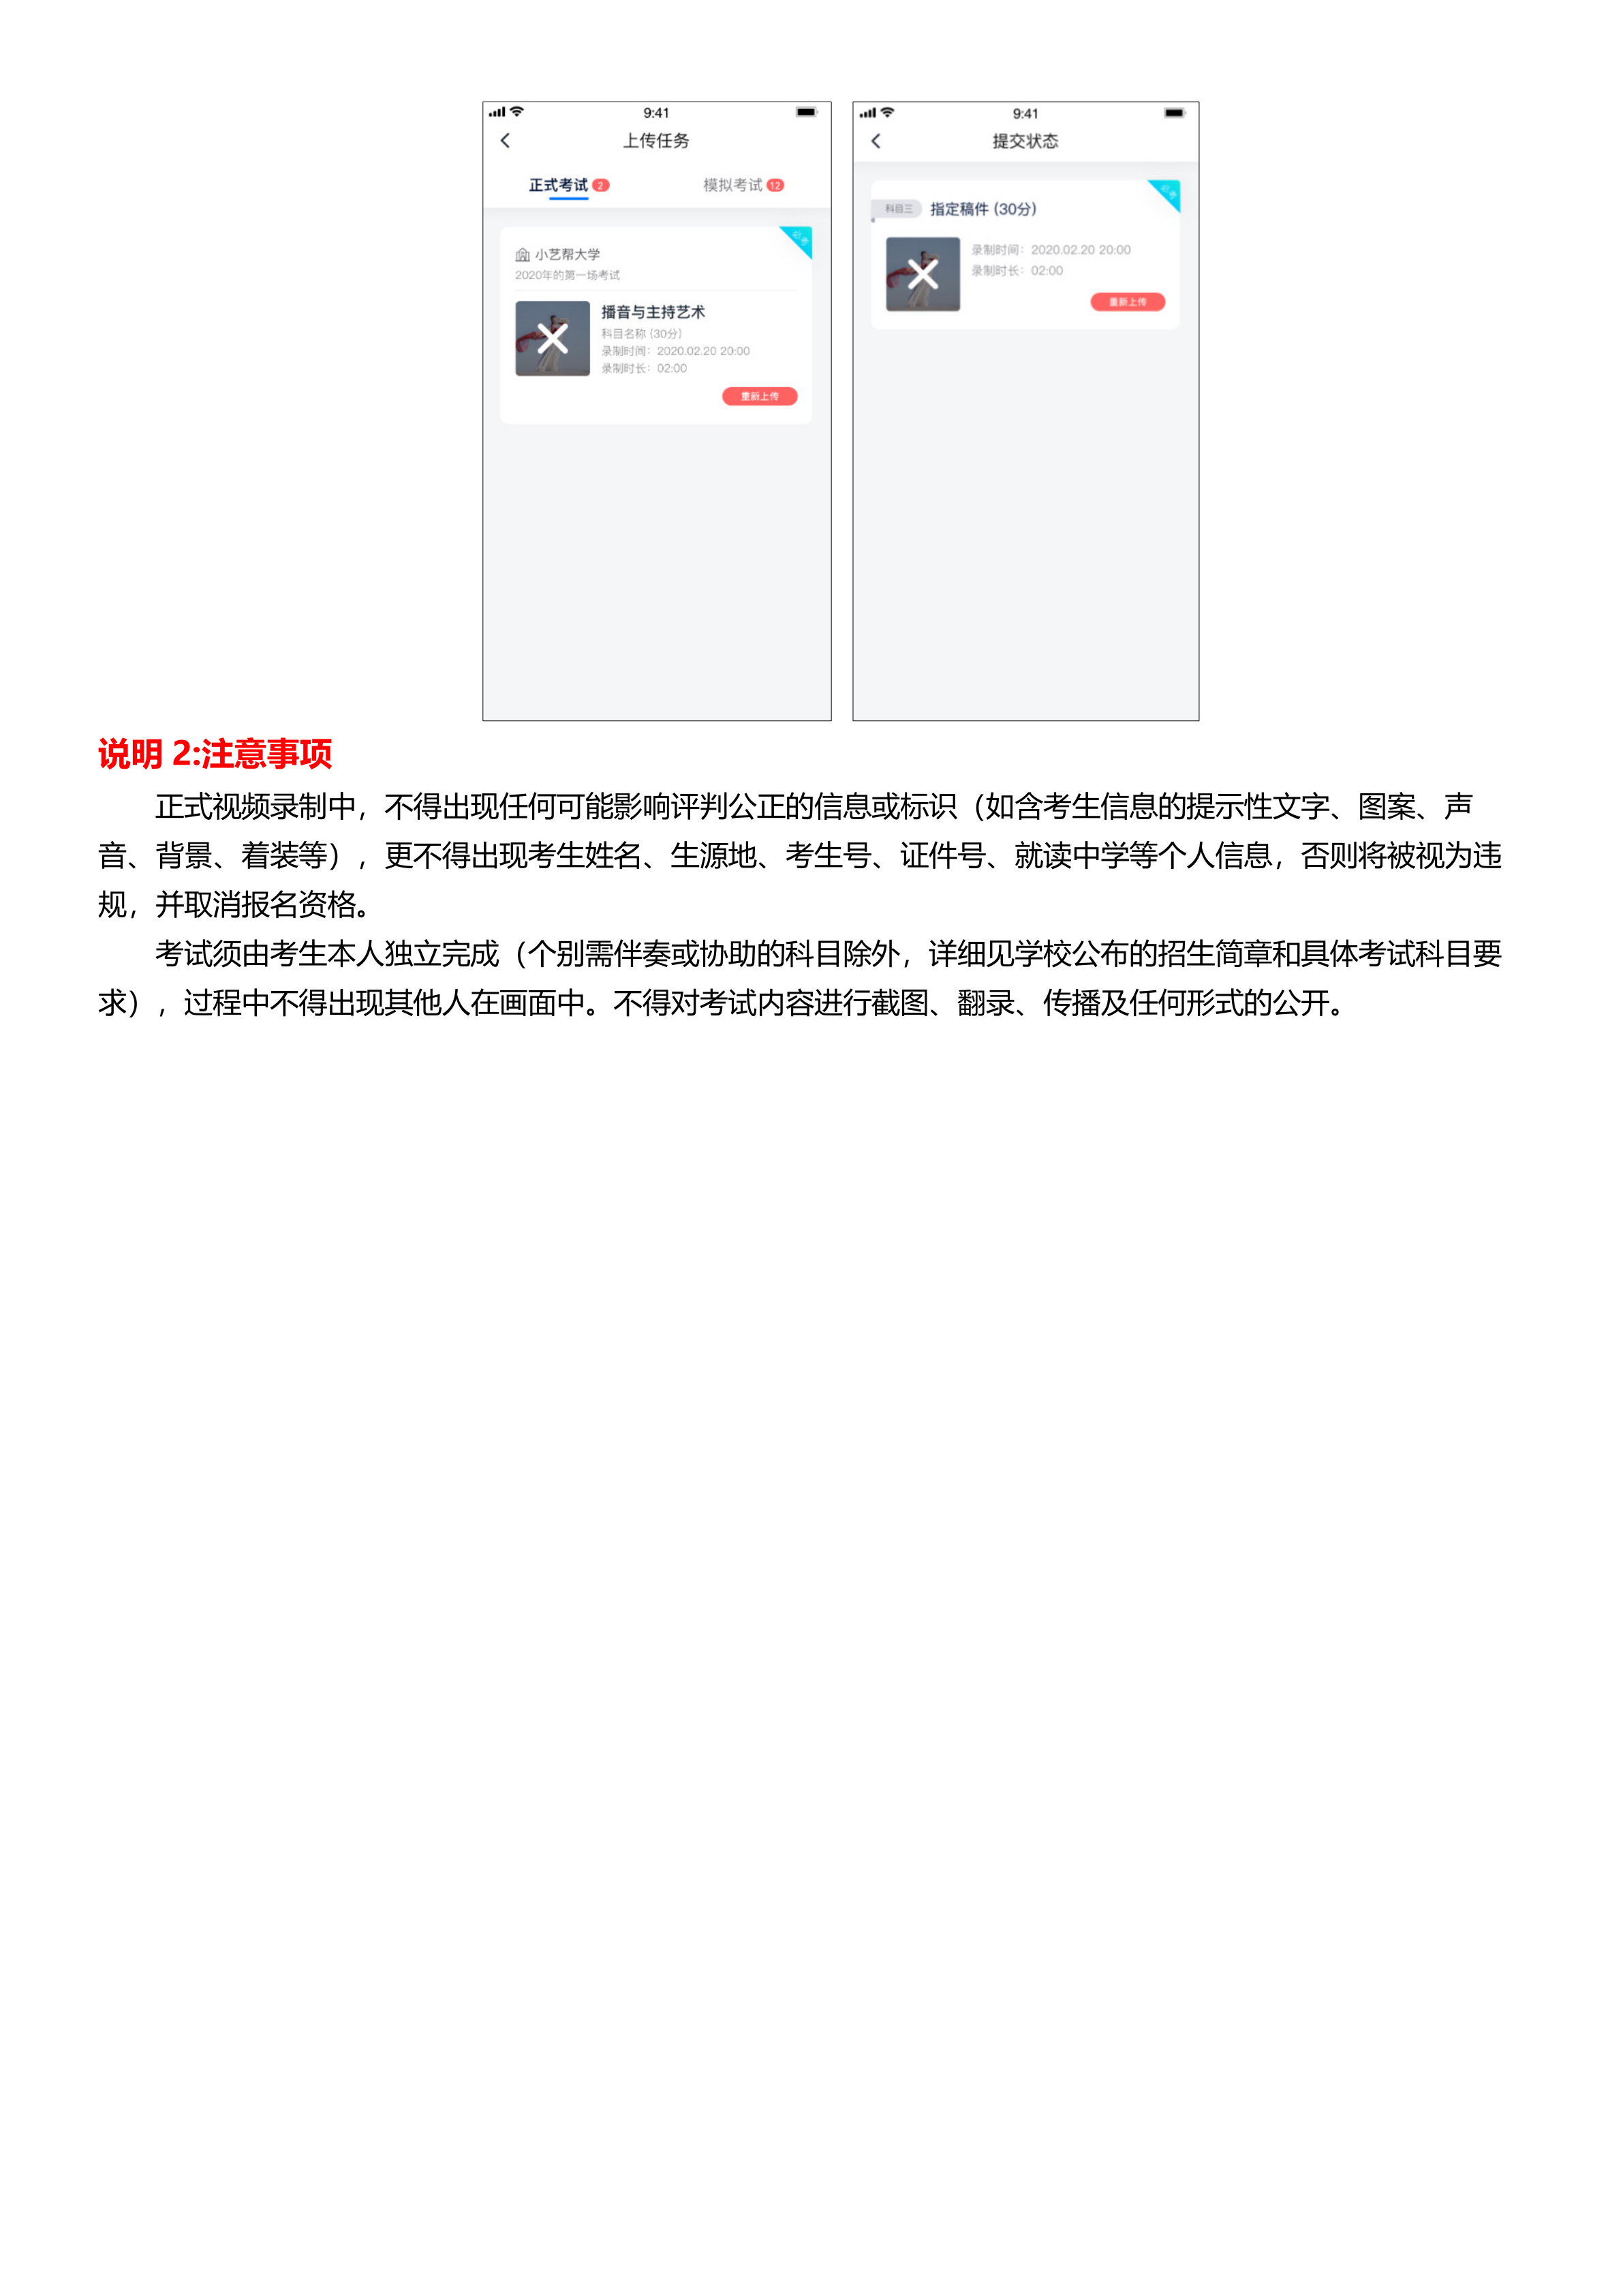 005-小艺帮2.0及小艺帮助手用户操作手册(面试、双机位)20201221_13.png